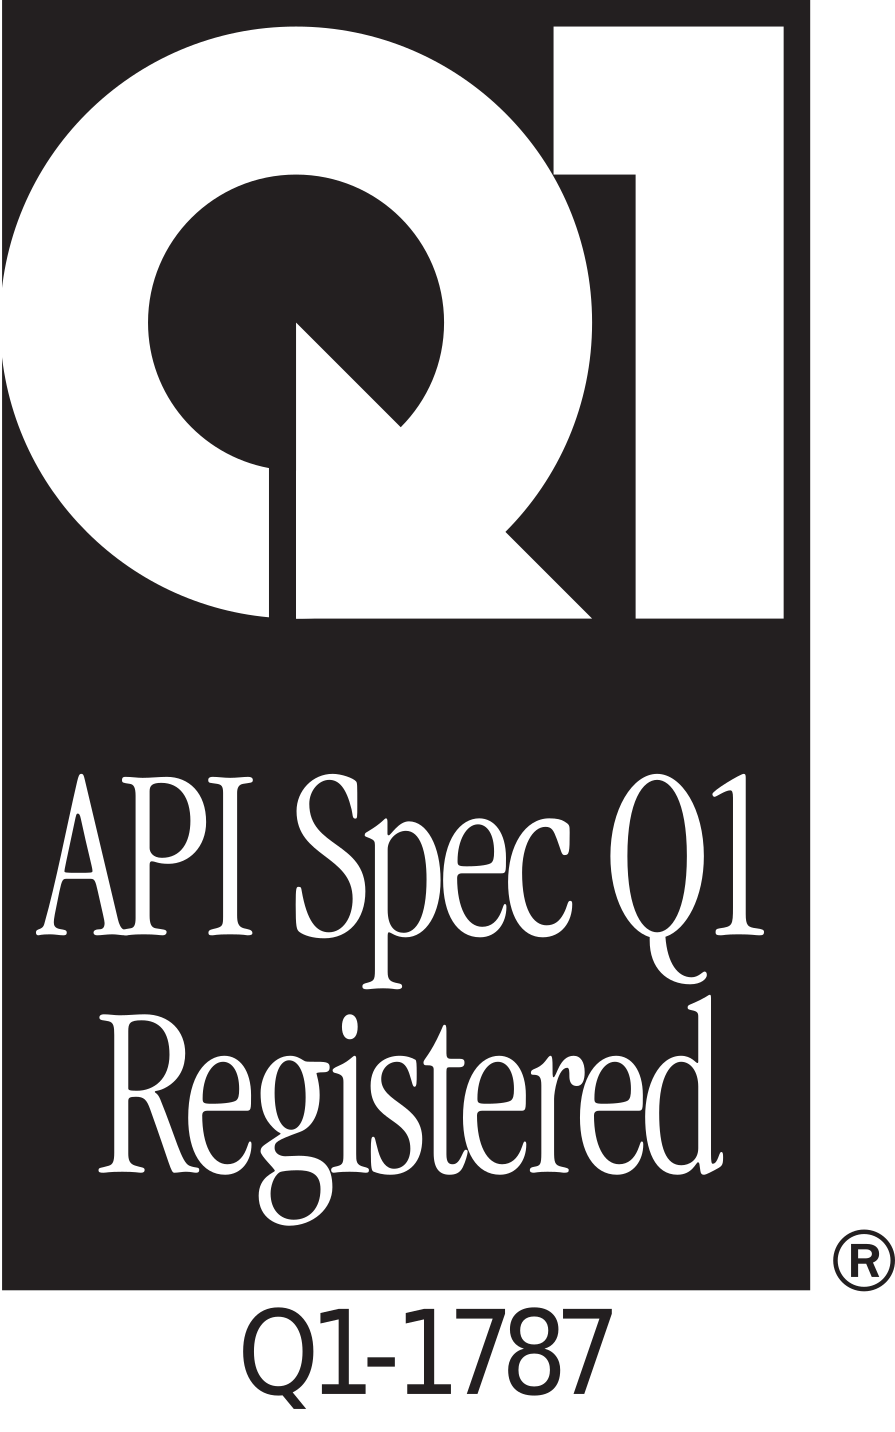 Q1 API Spec Q1 Registered